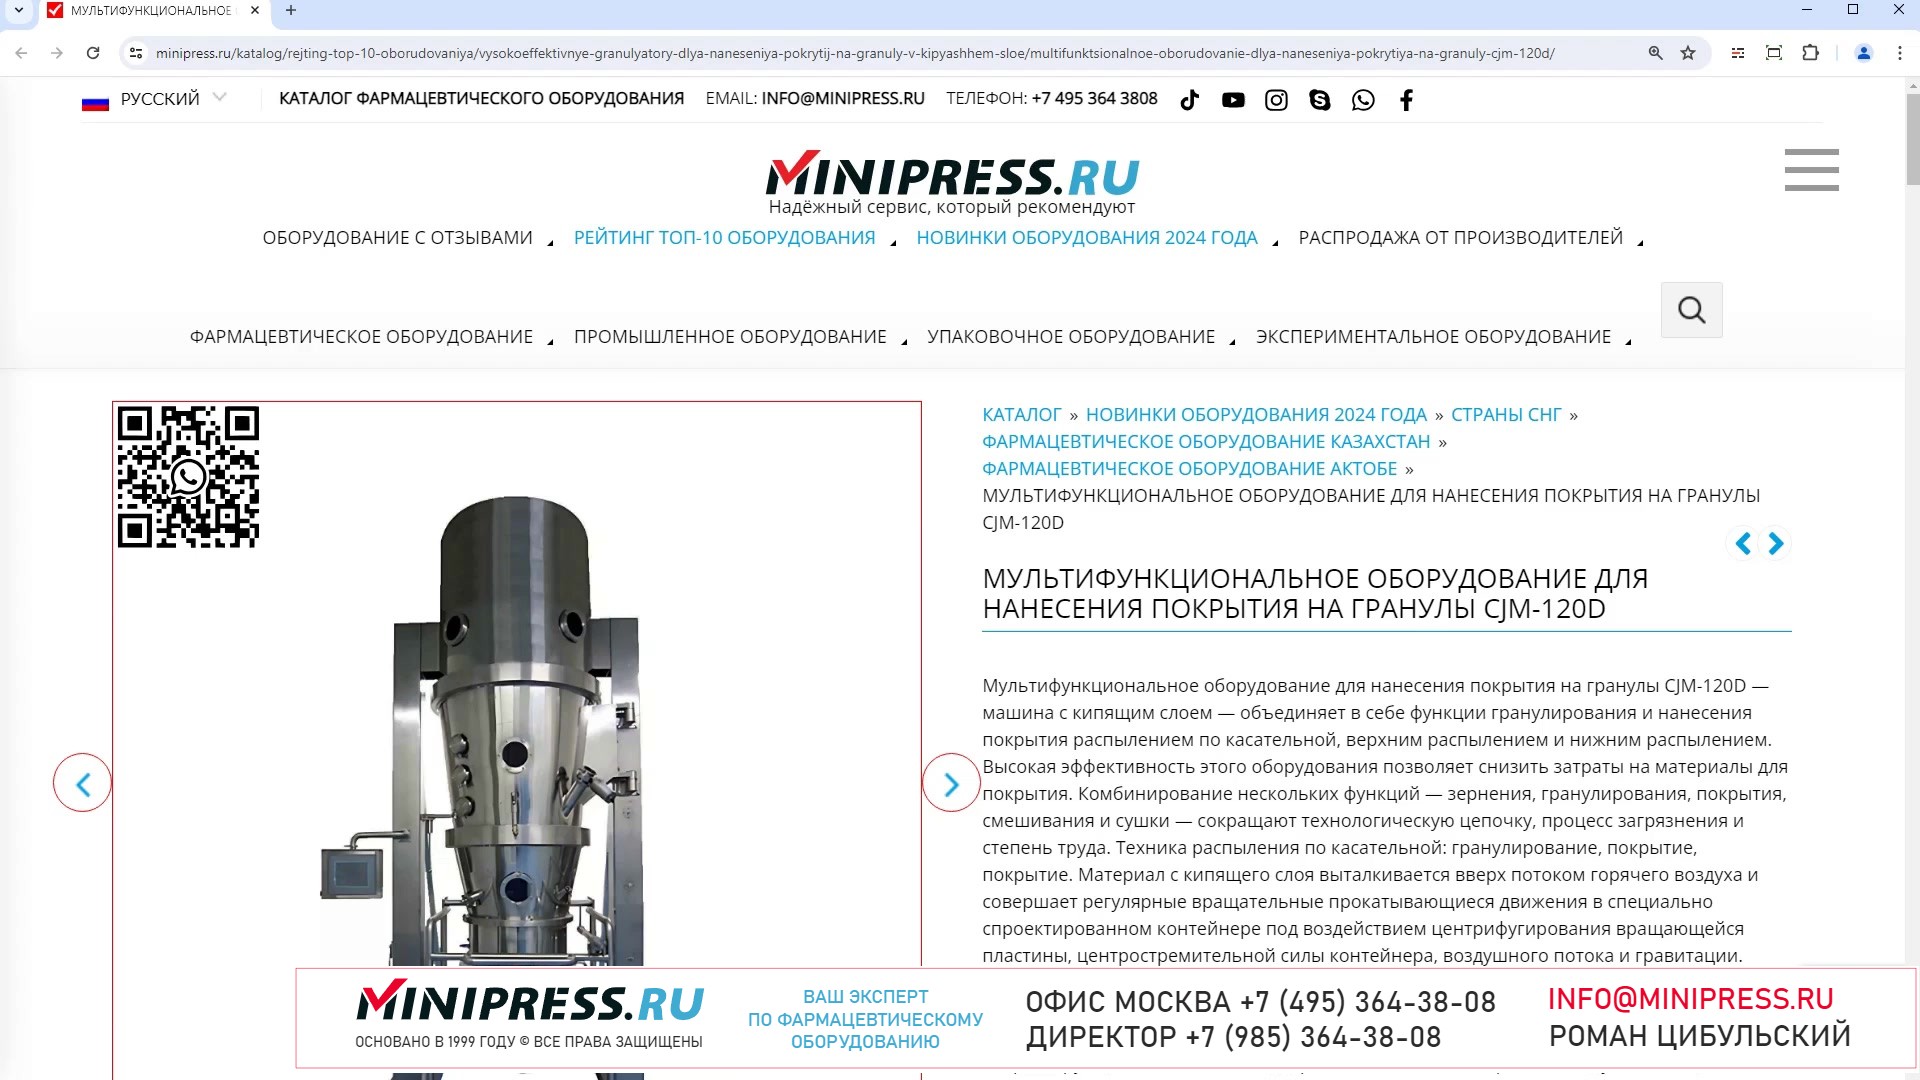 Minipress.ru Мультифункциональное оборудование для нанесения покрытия на гранулы CJM-120D